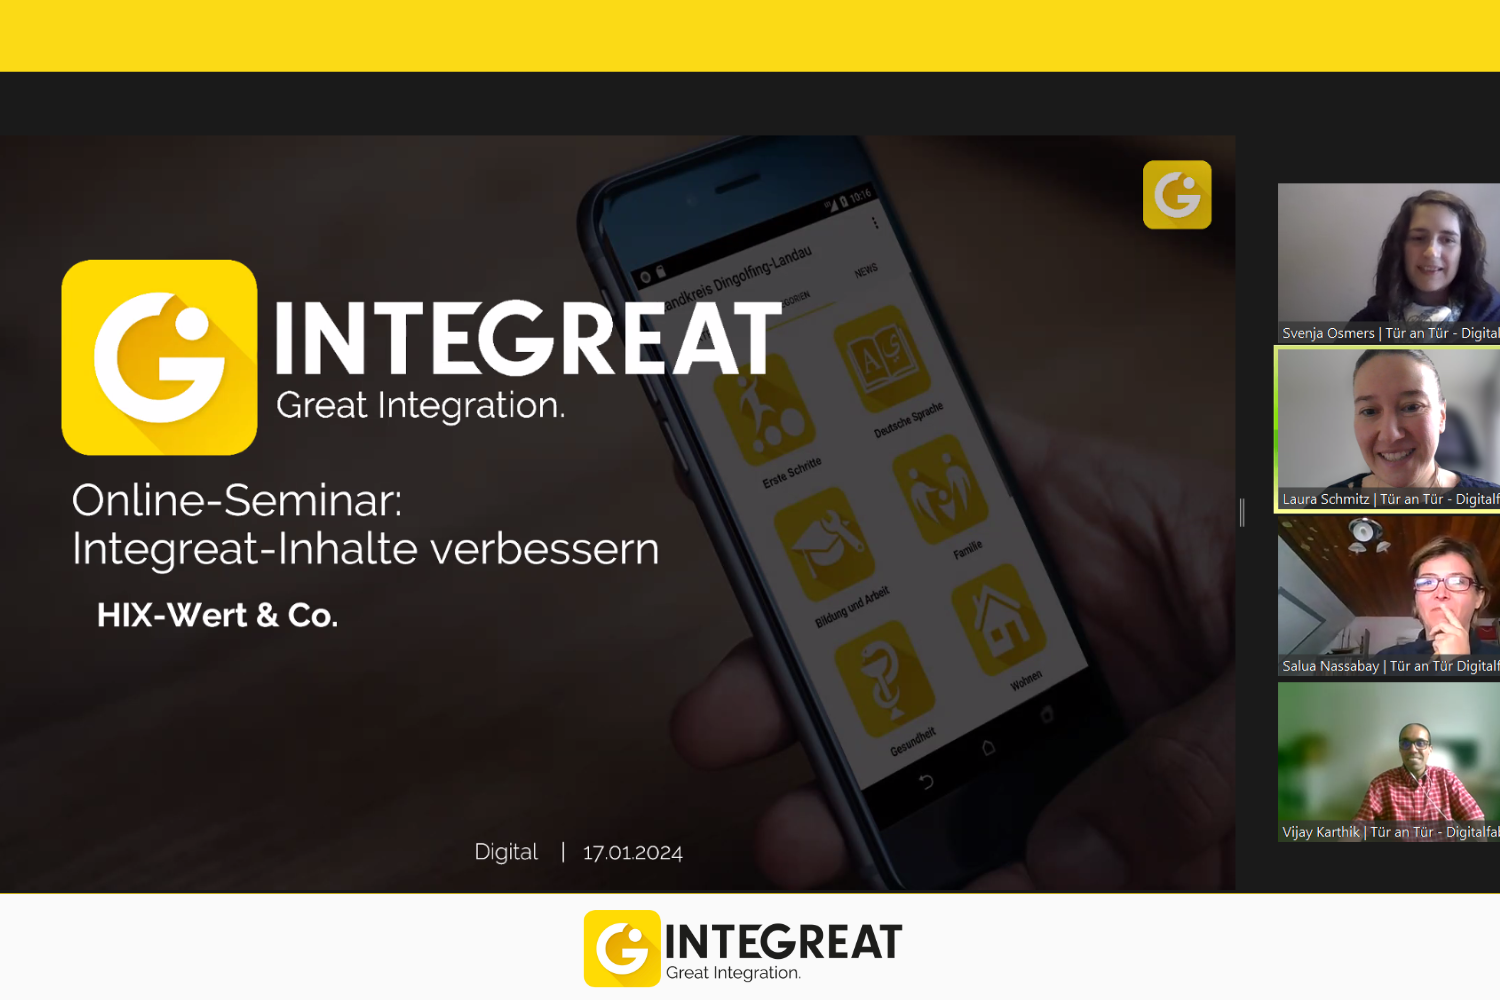 Online-Seminar "Integreat-Inhalte verbessern - HIX-Wert & Co."